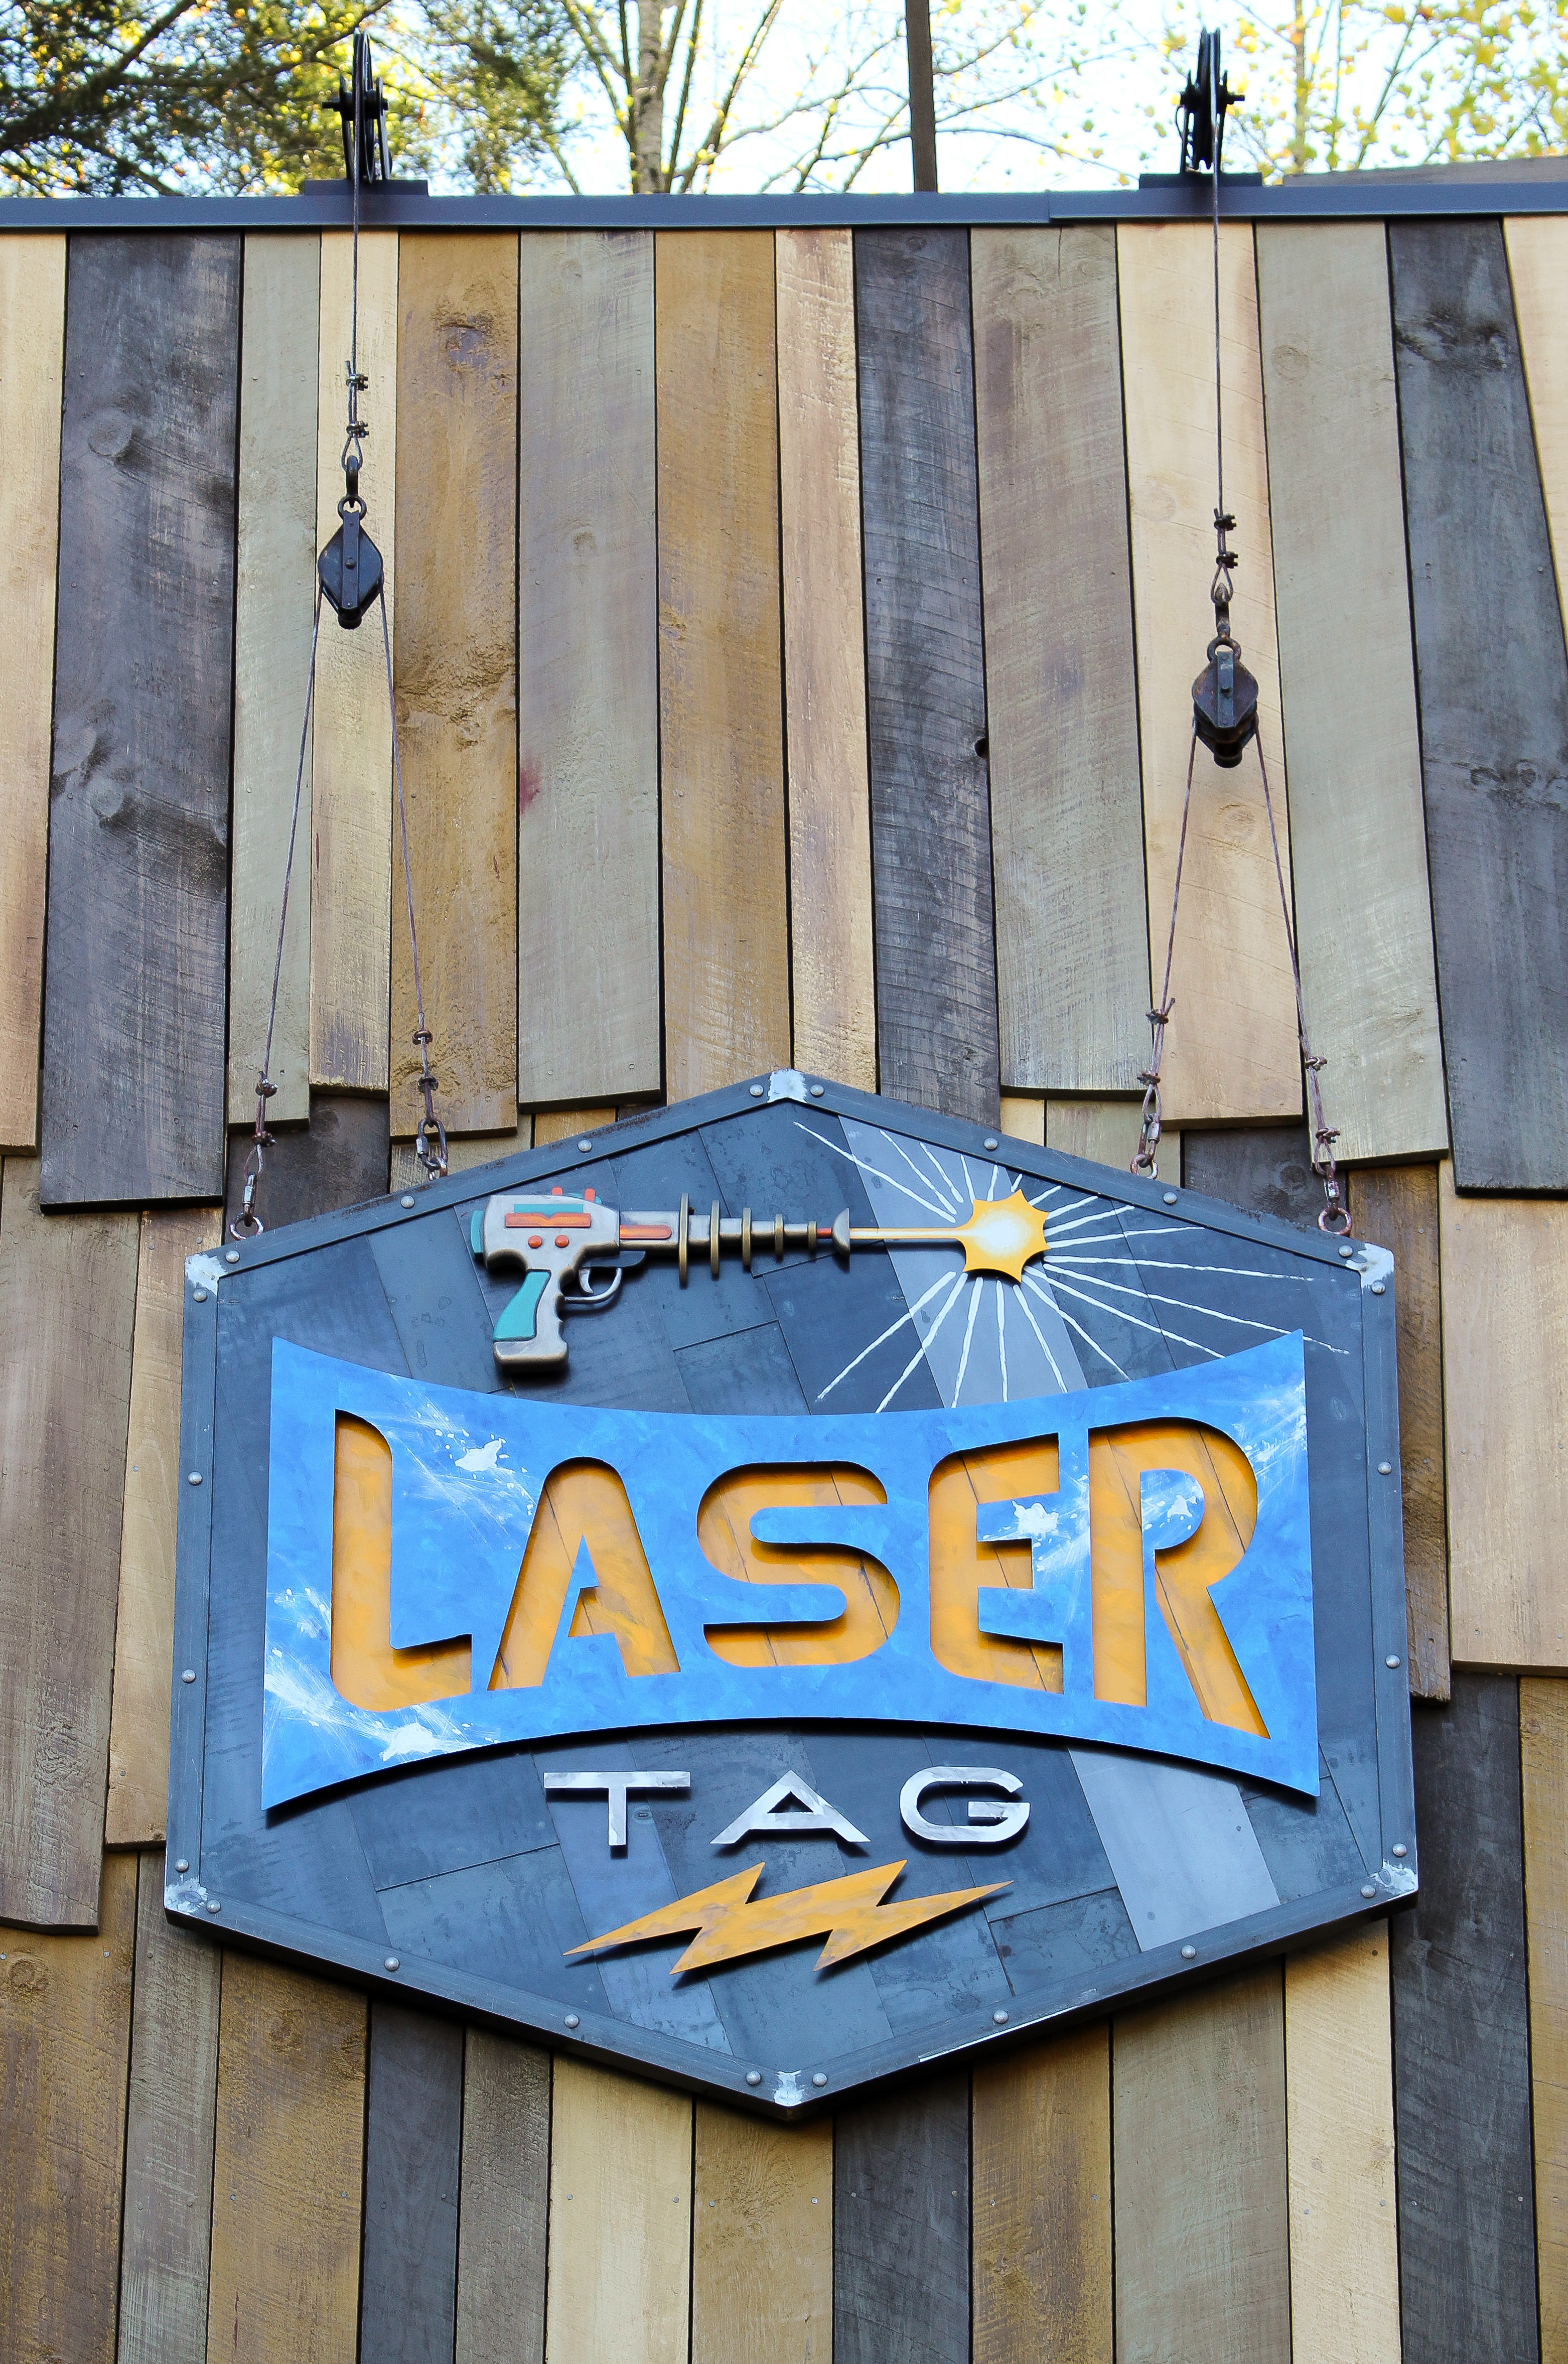 LaserTag at Gatlin's. Gatlinburg, TN.